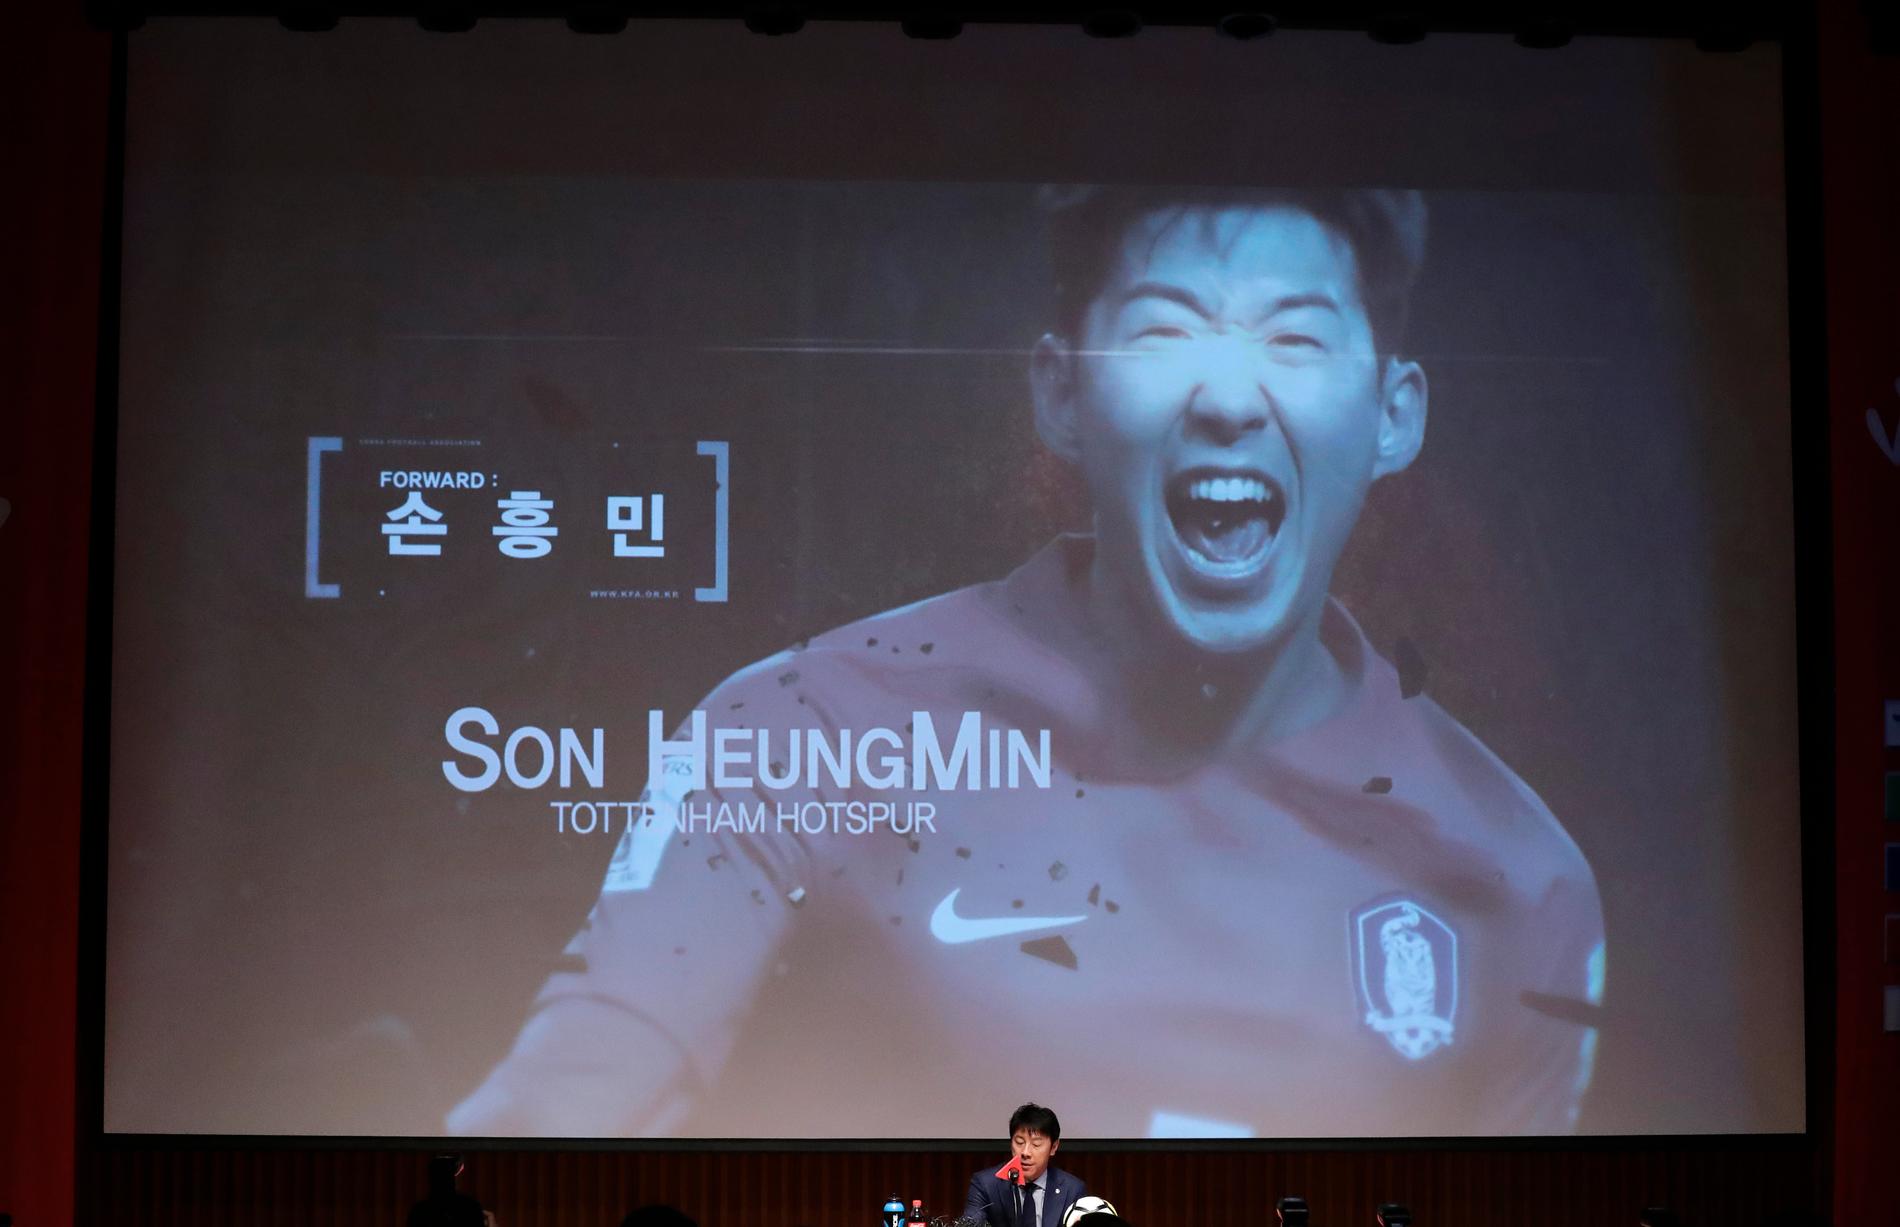 Sydkoreas förbundskapten Shin Tae-Yong tog på måndagen ut sin preliminära trupp till fotbolls-VM i Ryssland. En av lagets nyckelspelare blir Tottenhamstjärnan Son Heung-Min.